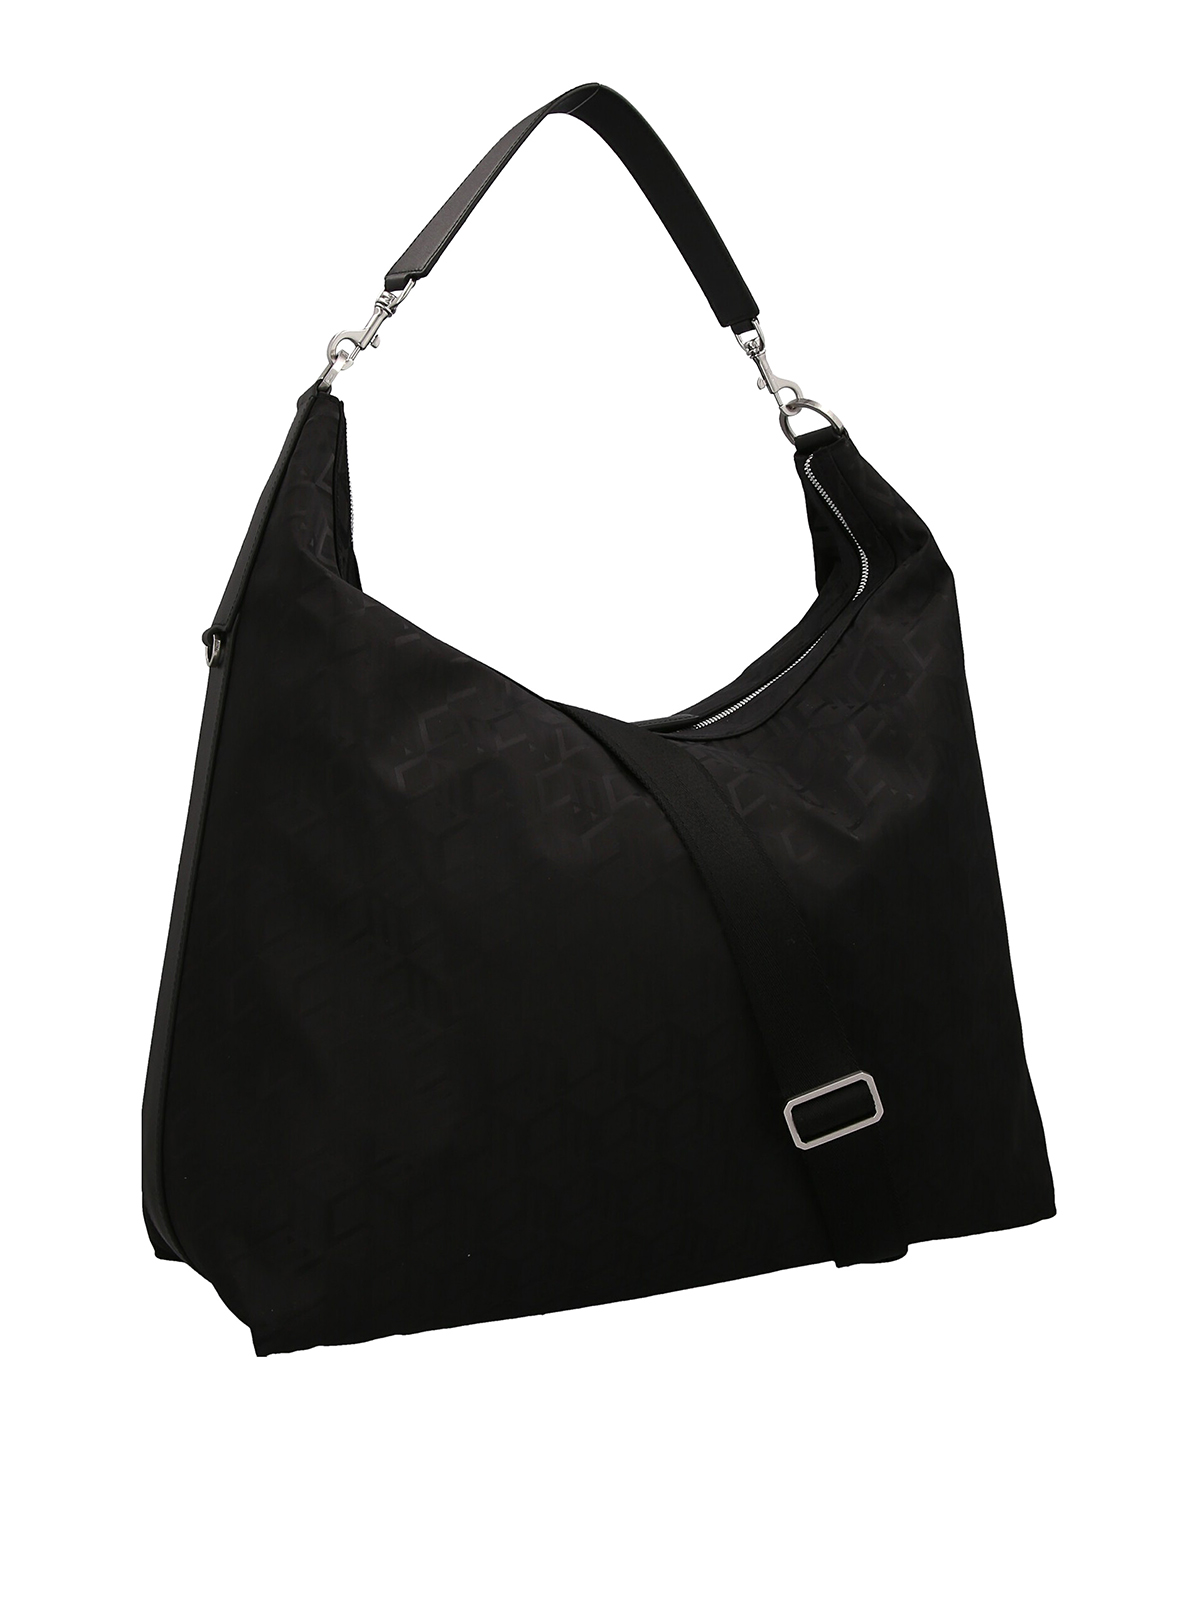 Mcm Shoulder Bag Black Nylon